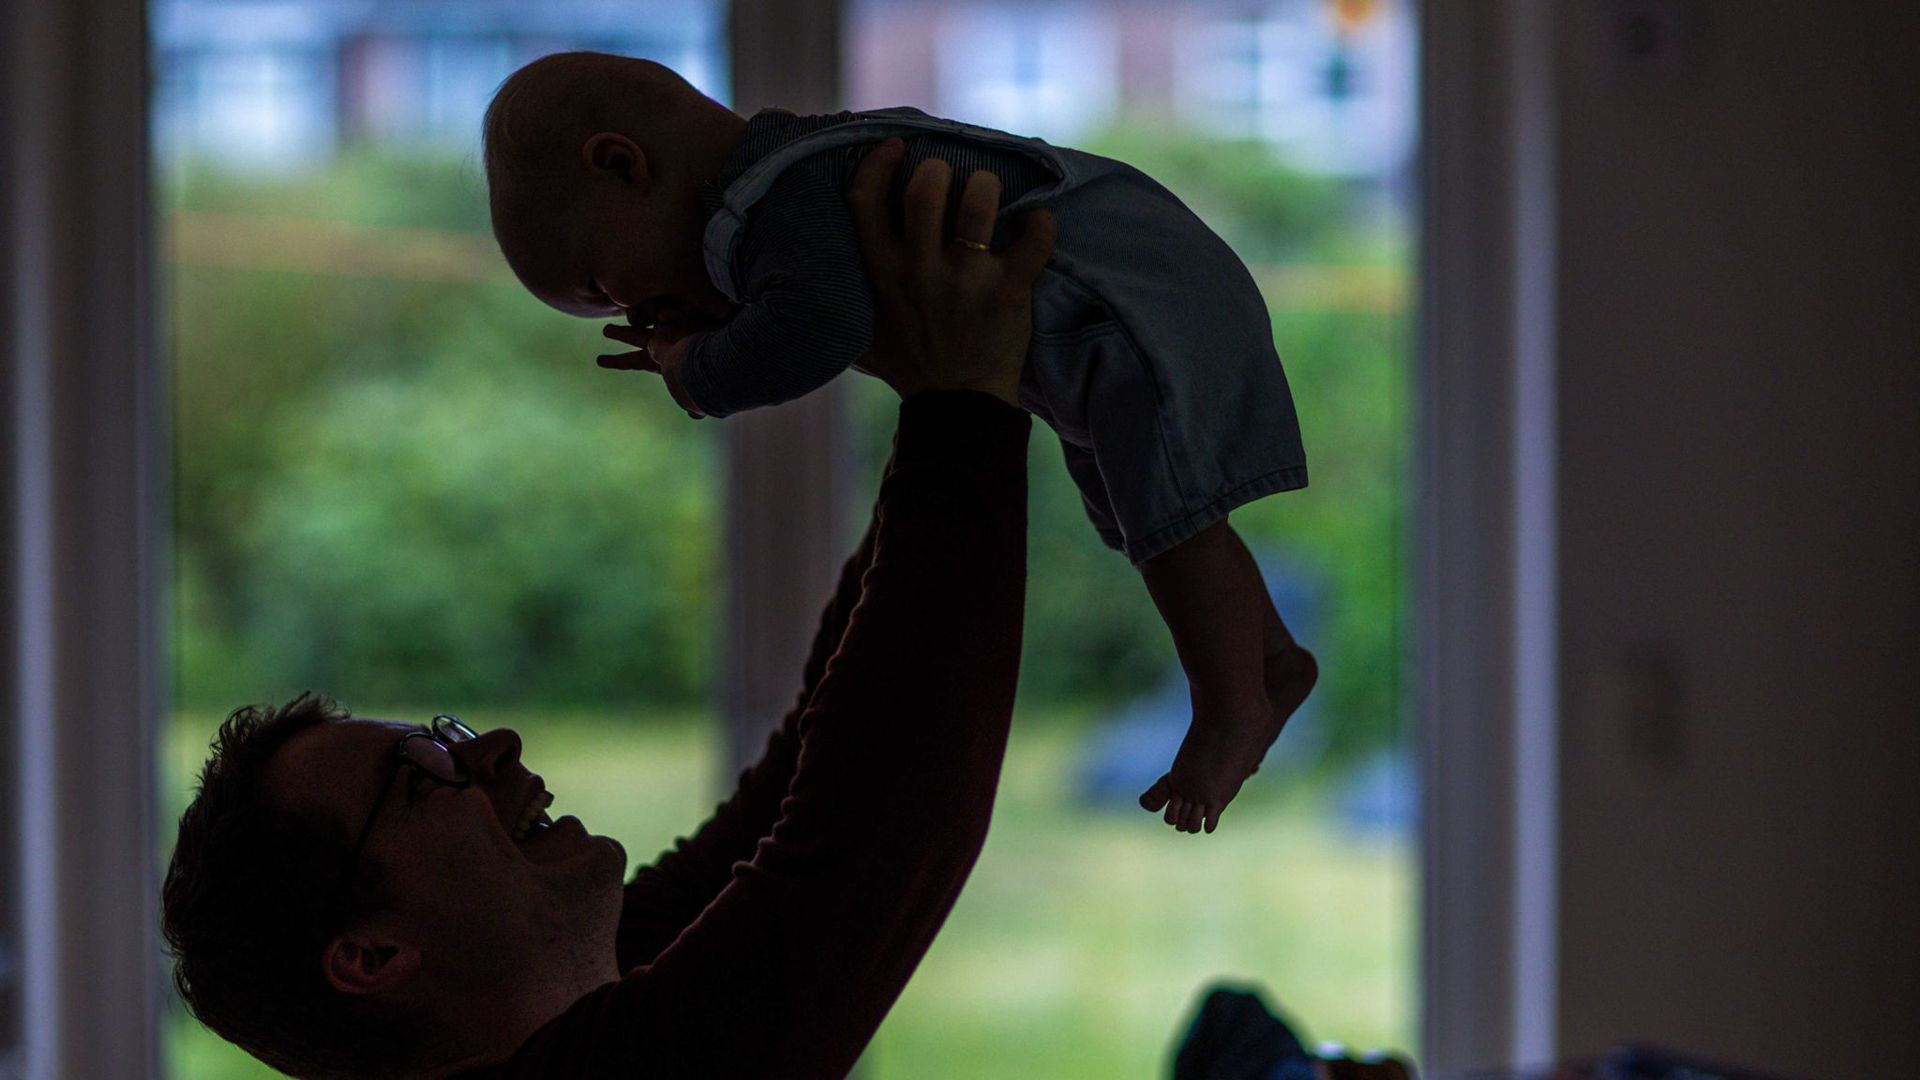 SAP rechnet mit 700 bis 800 Vätern pro Jahr in Deutschland, wenn mehr als 90 Prozent der Berechtigten das Angebot annehmen.